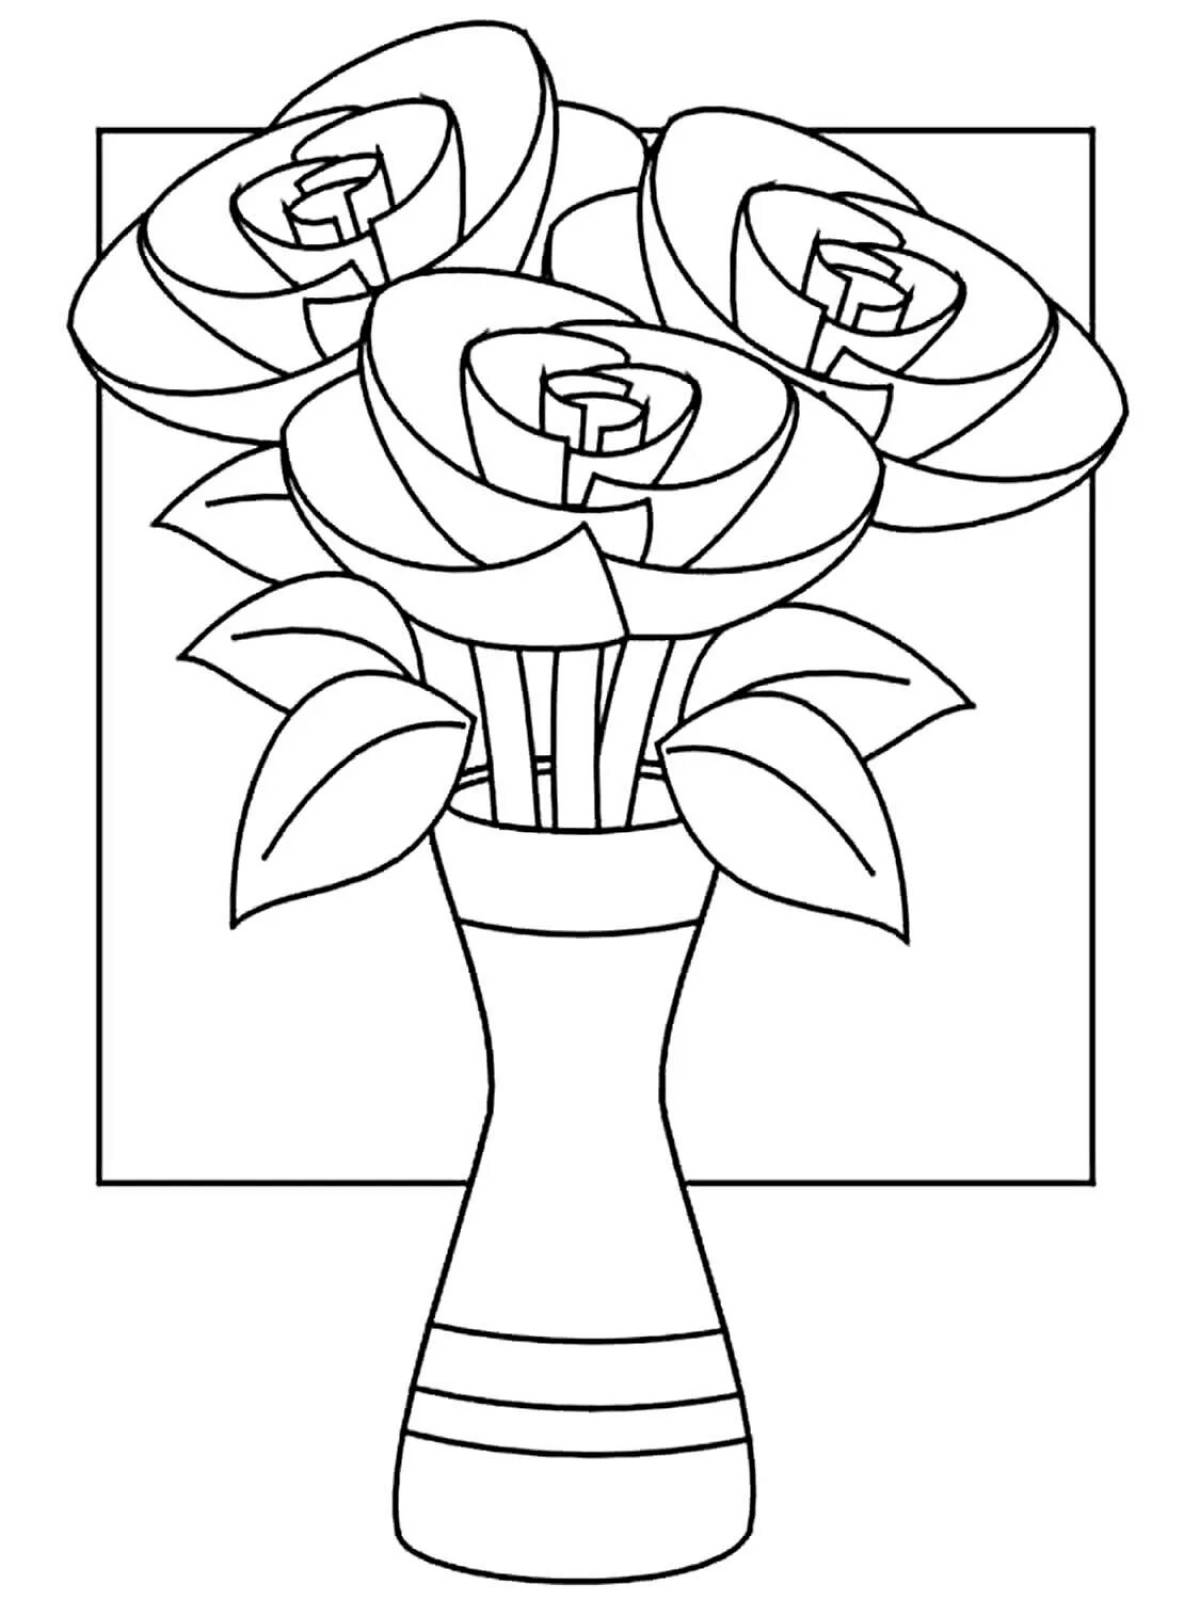 Rose flowers in vase #7